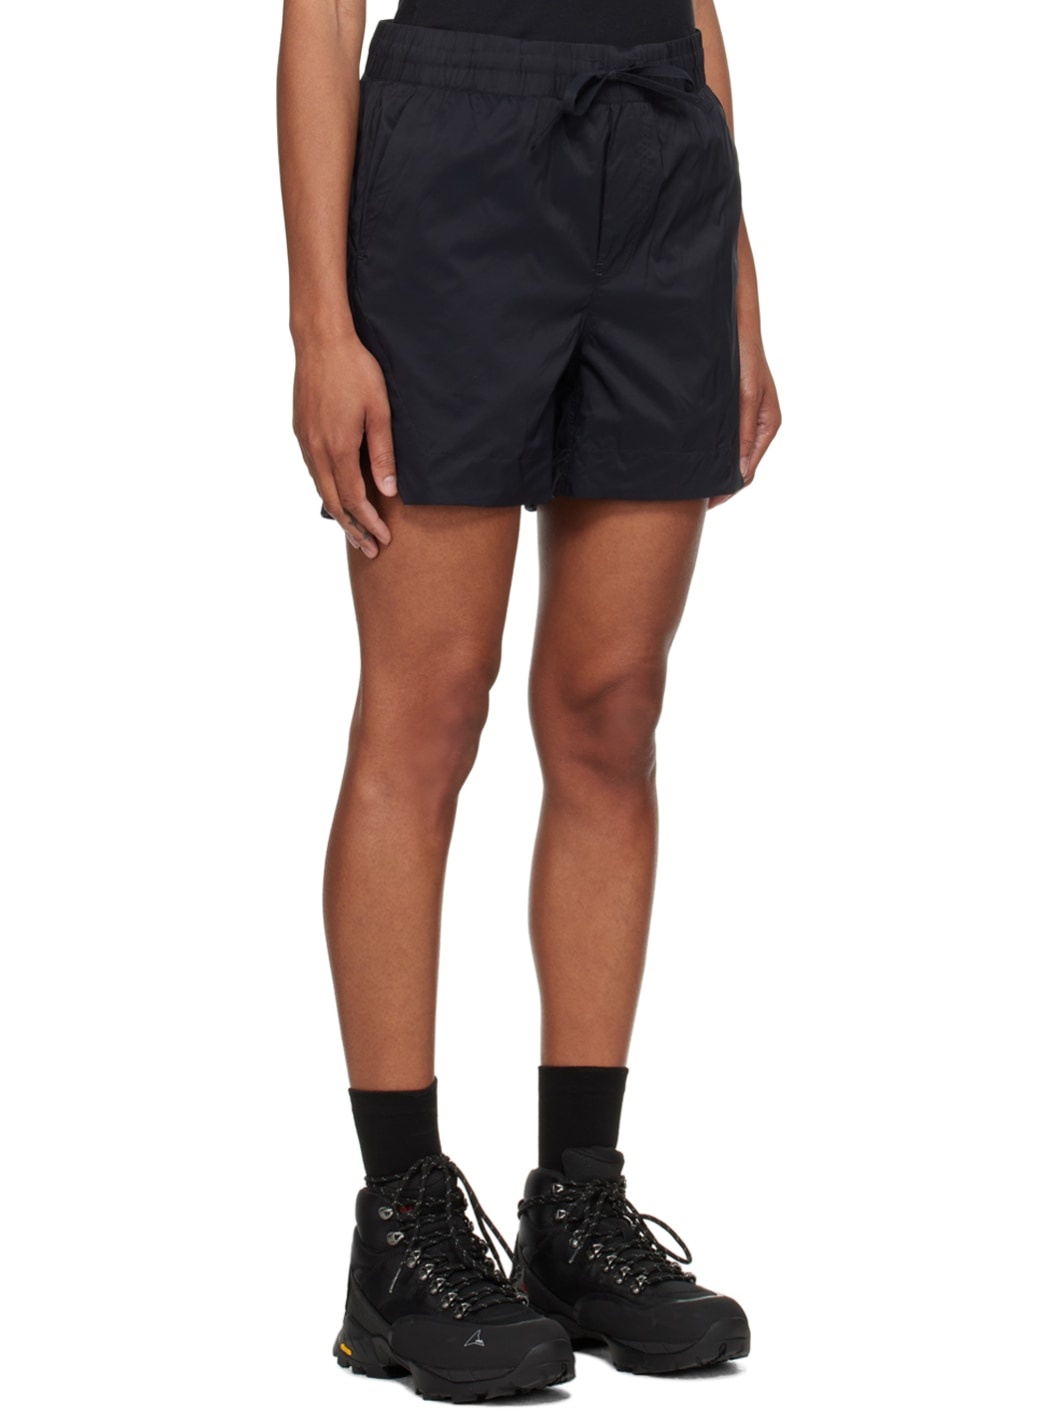 Black Kaslo Shorts - 2